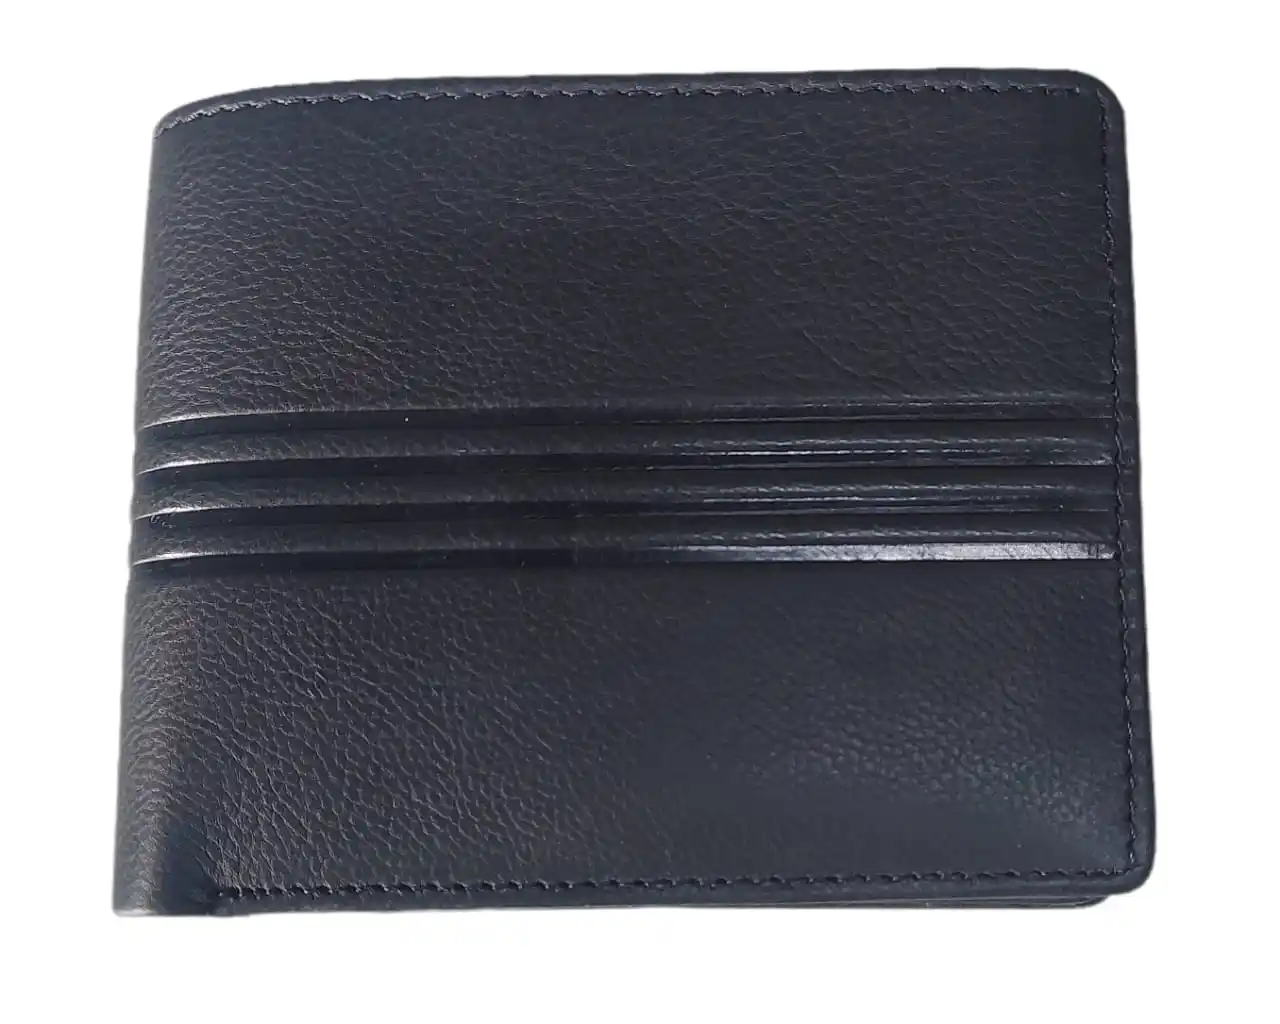 Portefeuille pour hommes avec protection RFID, compartiments pour cartes de crédit et billets de banque, pochette à fermeture éclair en cuir pur